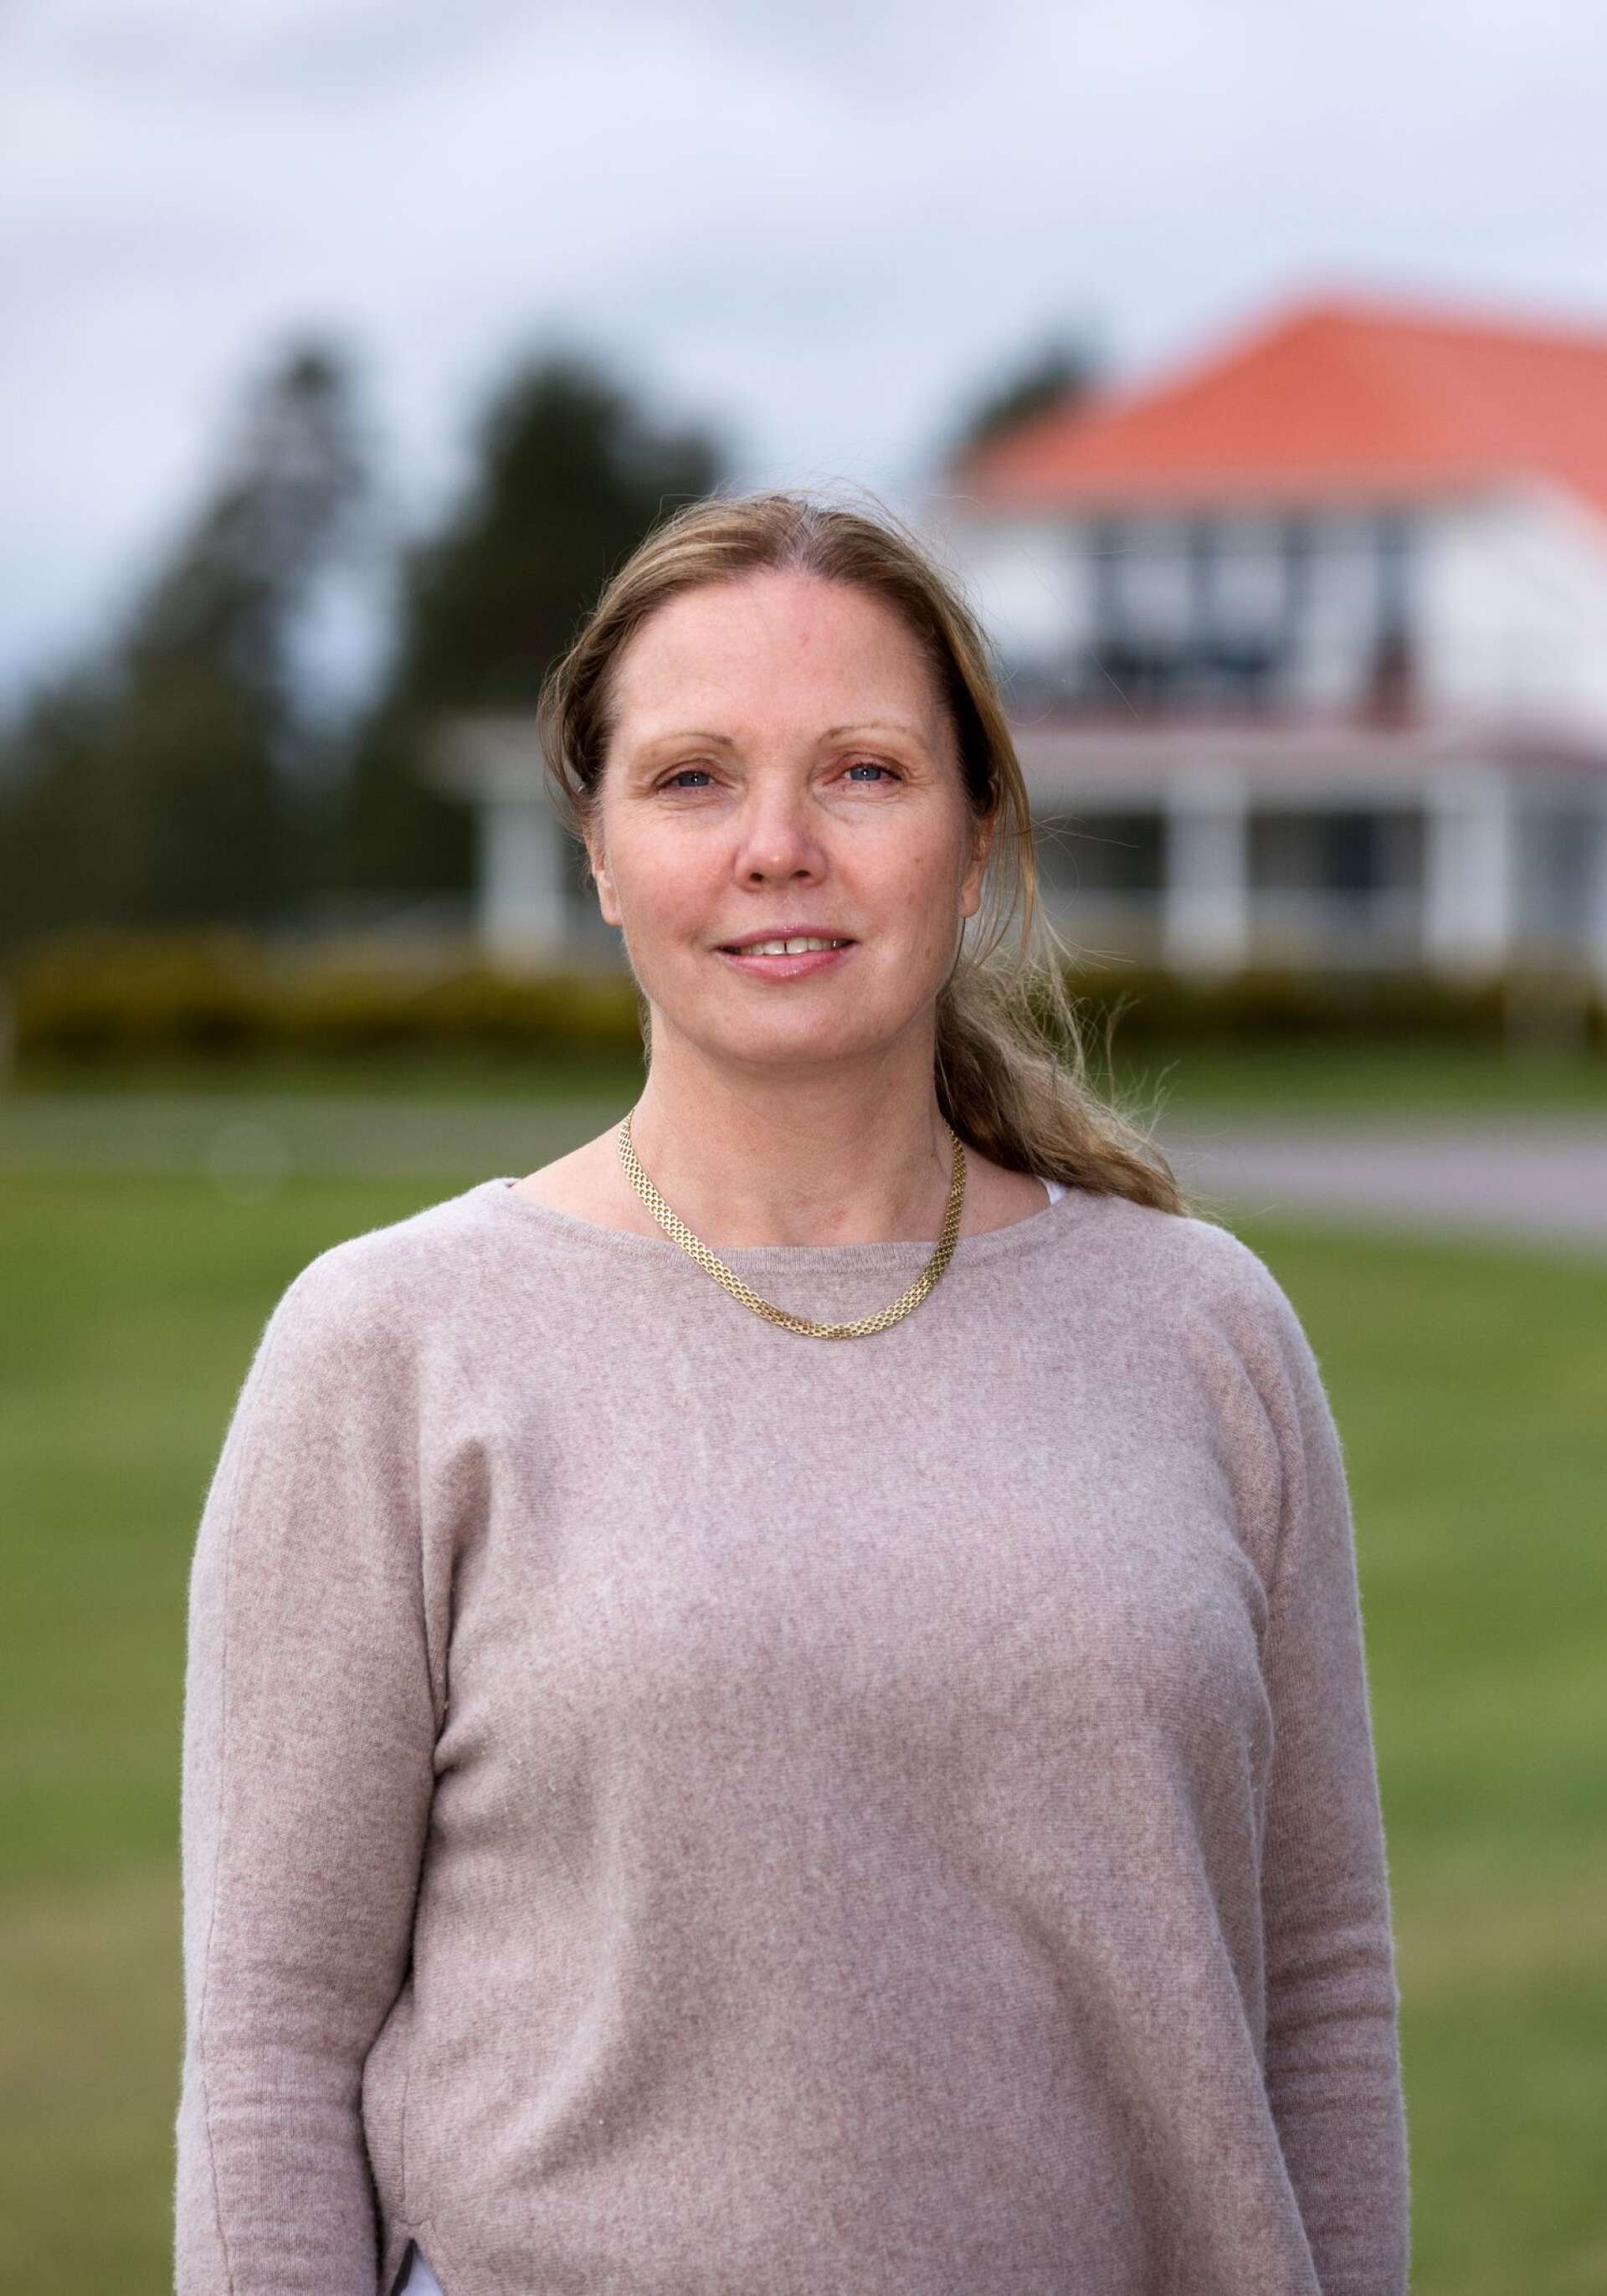 ”Golfboomen har gett oss mycket positiv energi”, säger Lena Jonsson, styrelseordförande i Karlstad Golfklubb